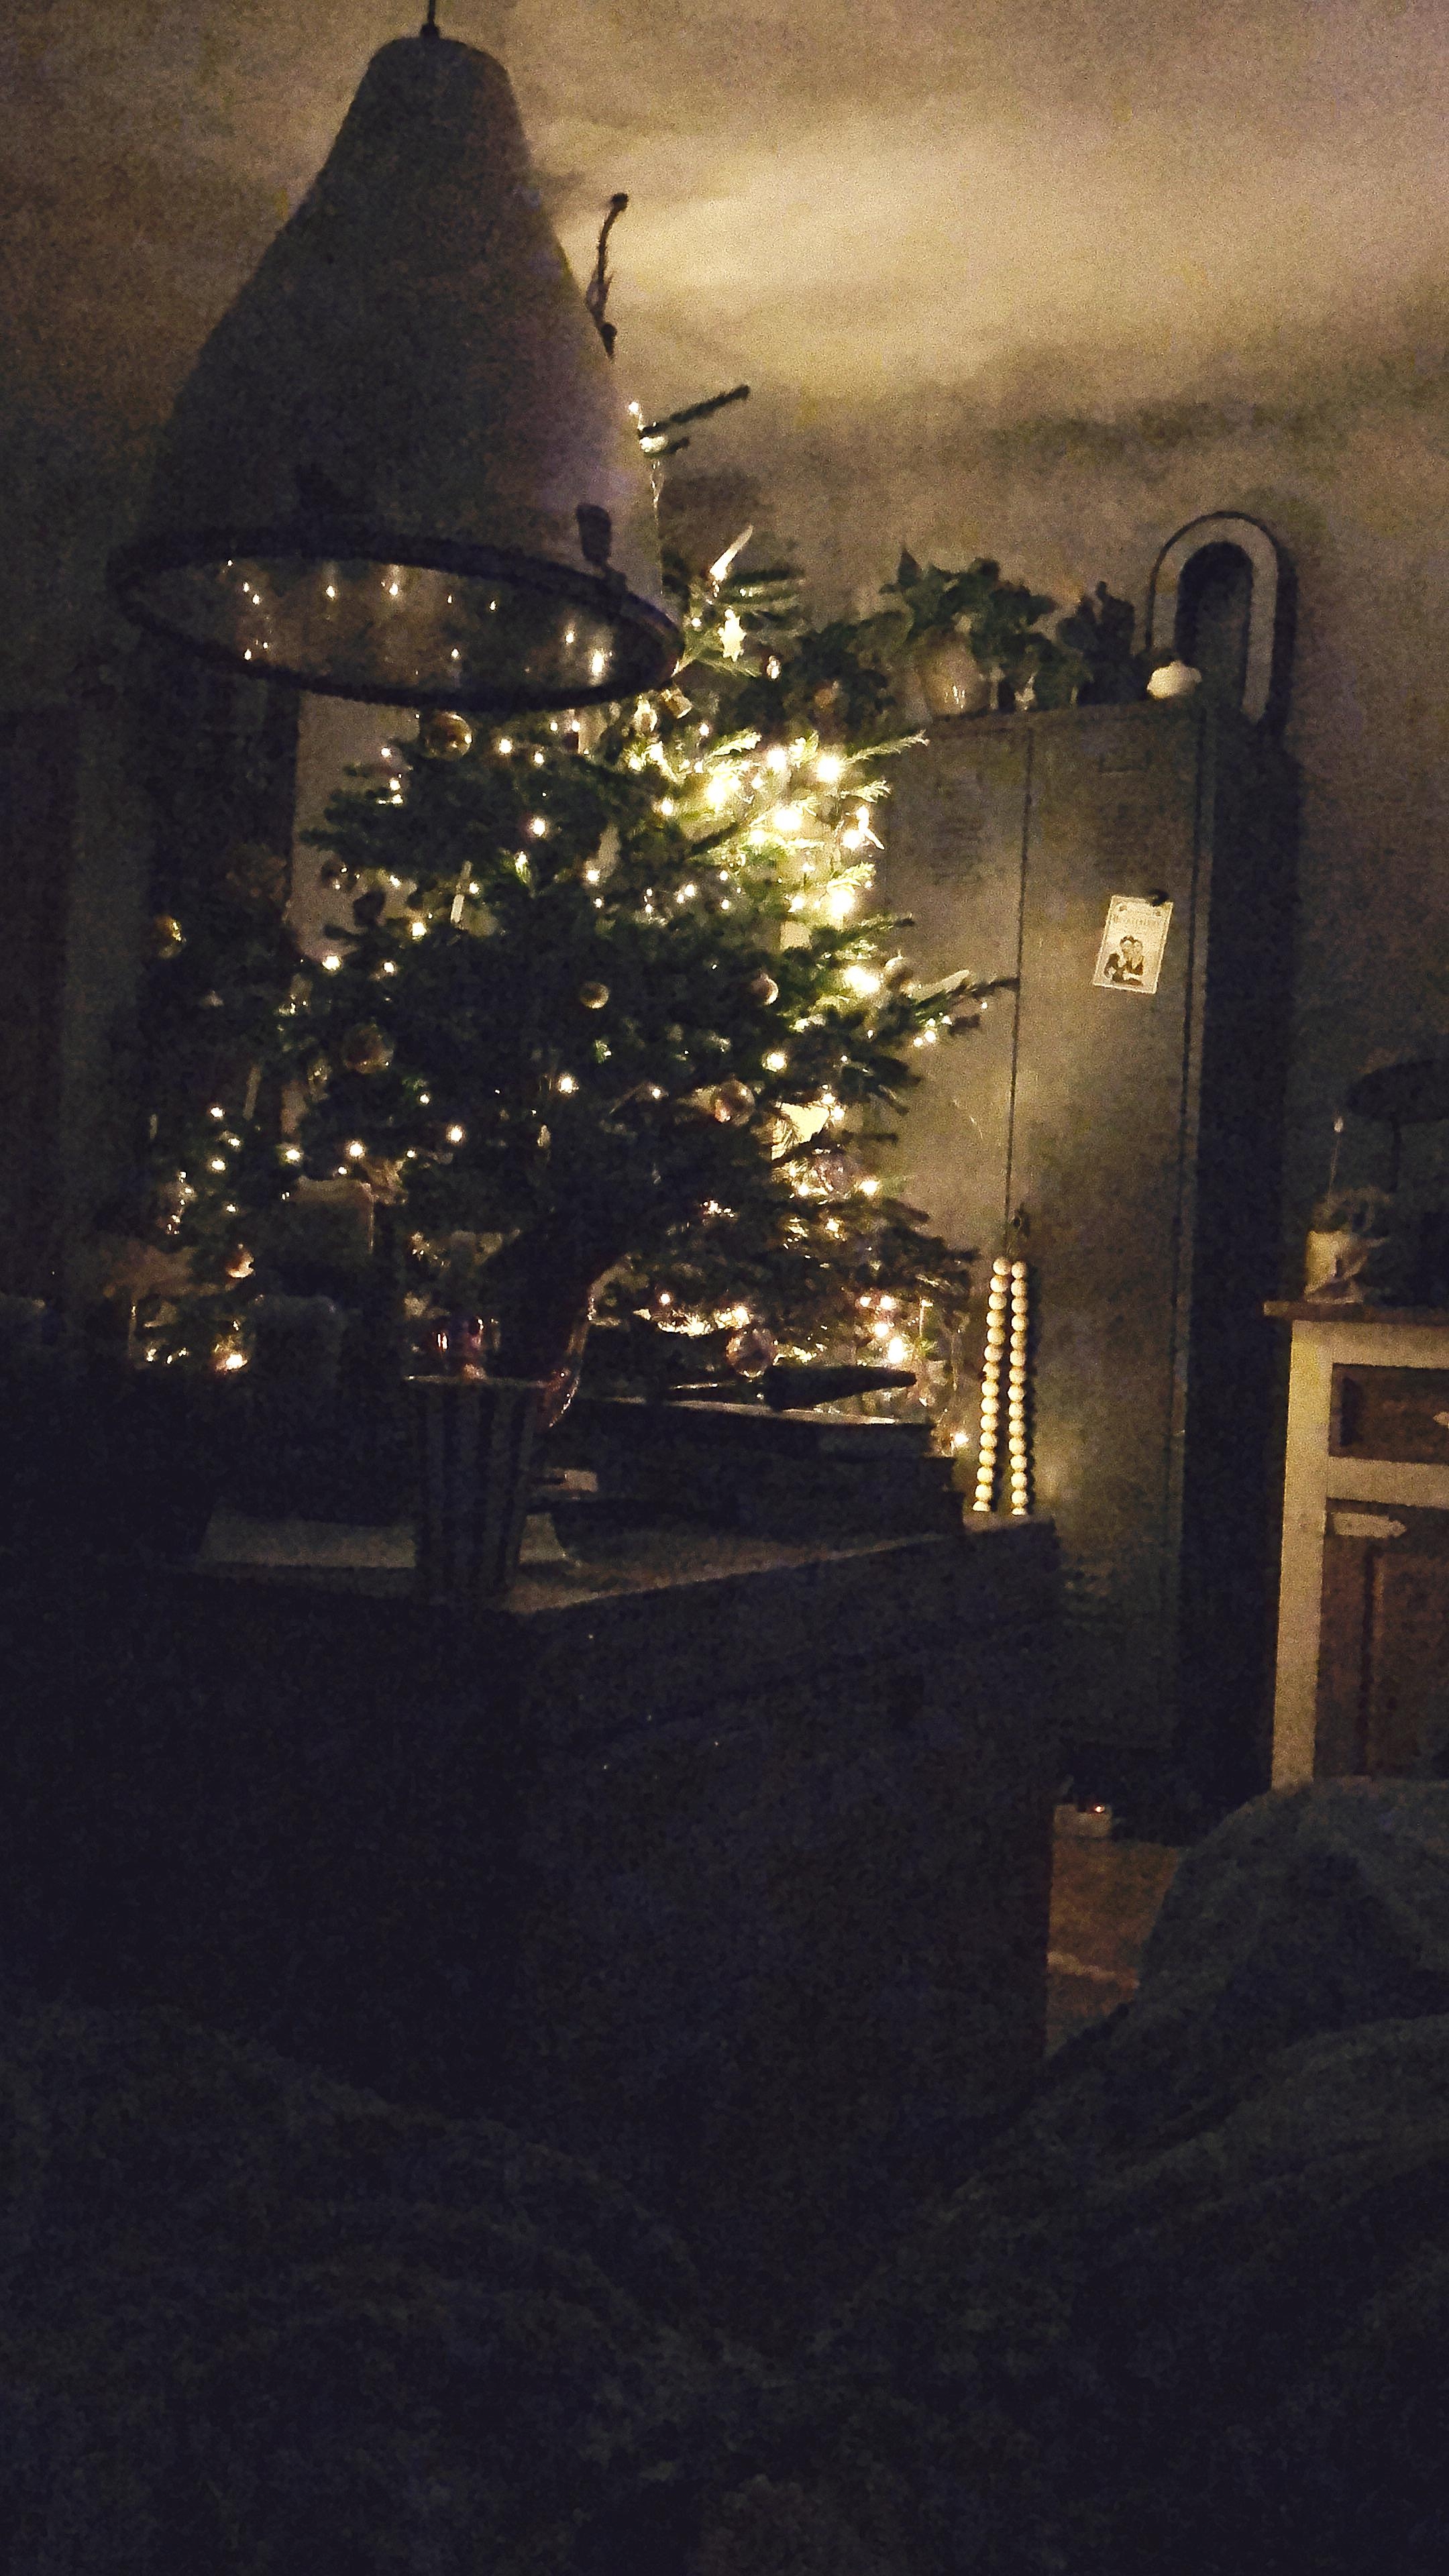 Zuhause ist es am Schönsten, ich liebe solche gemütlichen Abende.⭐️
#gemütlich #cozy #abendszuhause #weihnachten
#bald